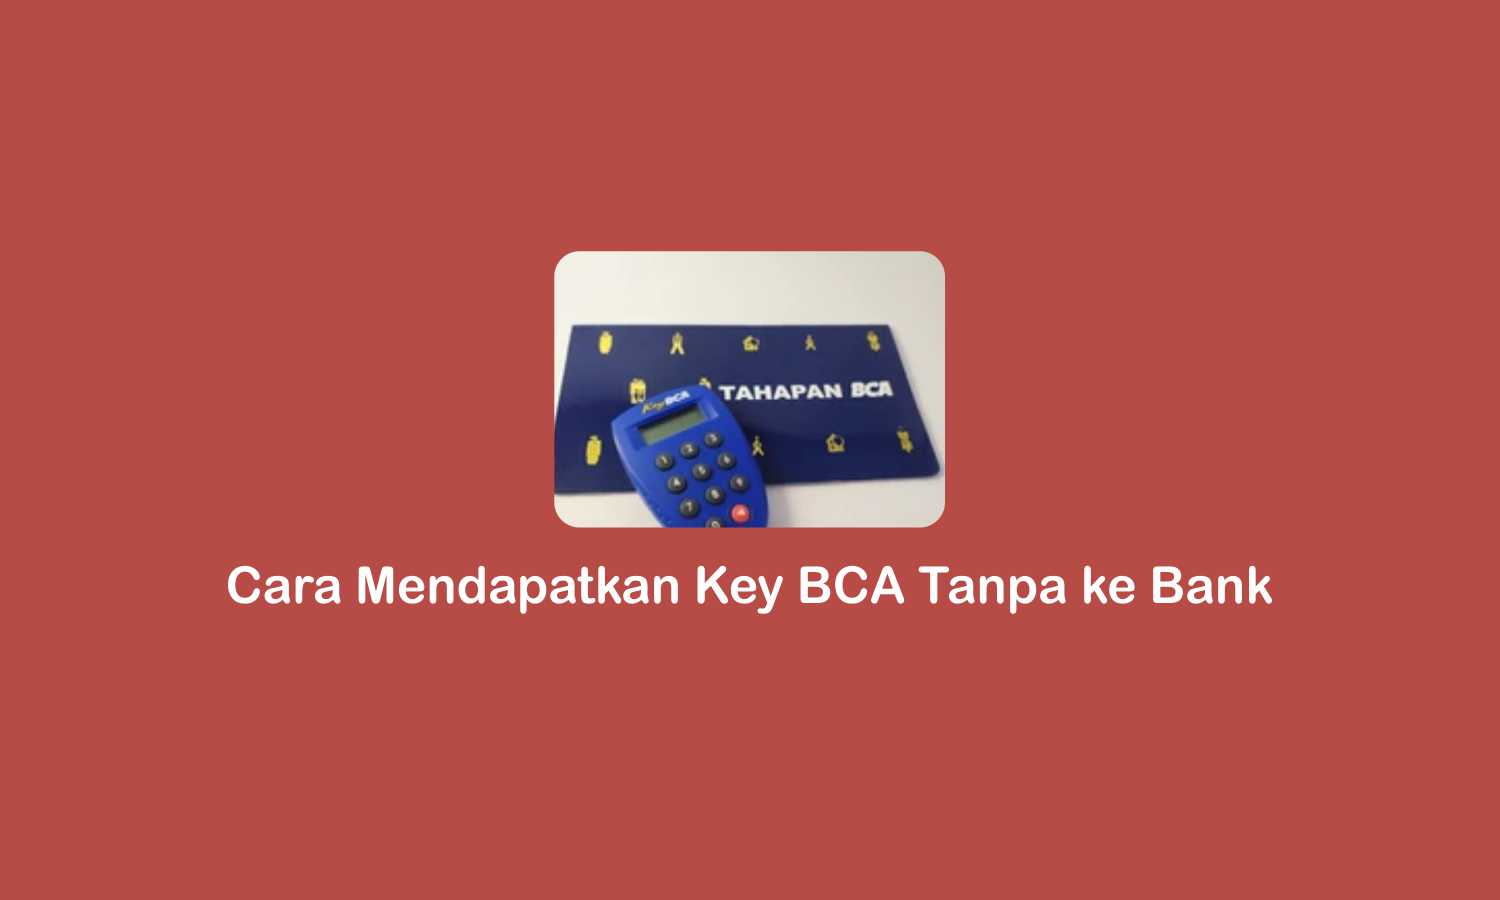 Cara Mendapatkan Key BCA Tanpa ke Bank